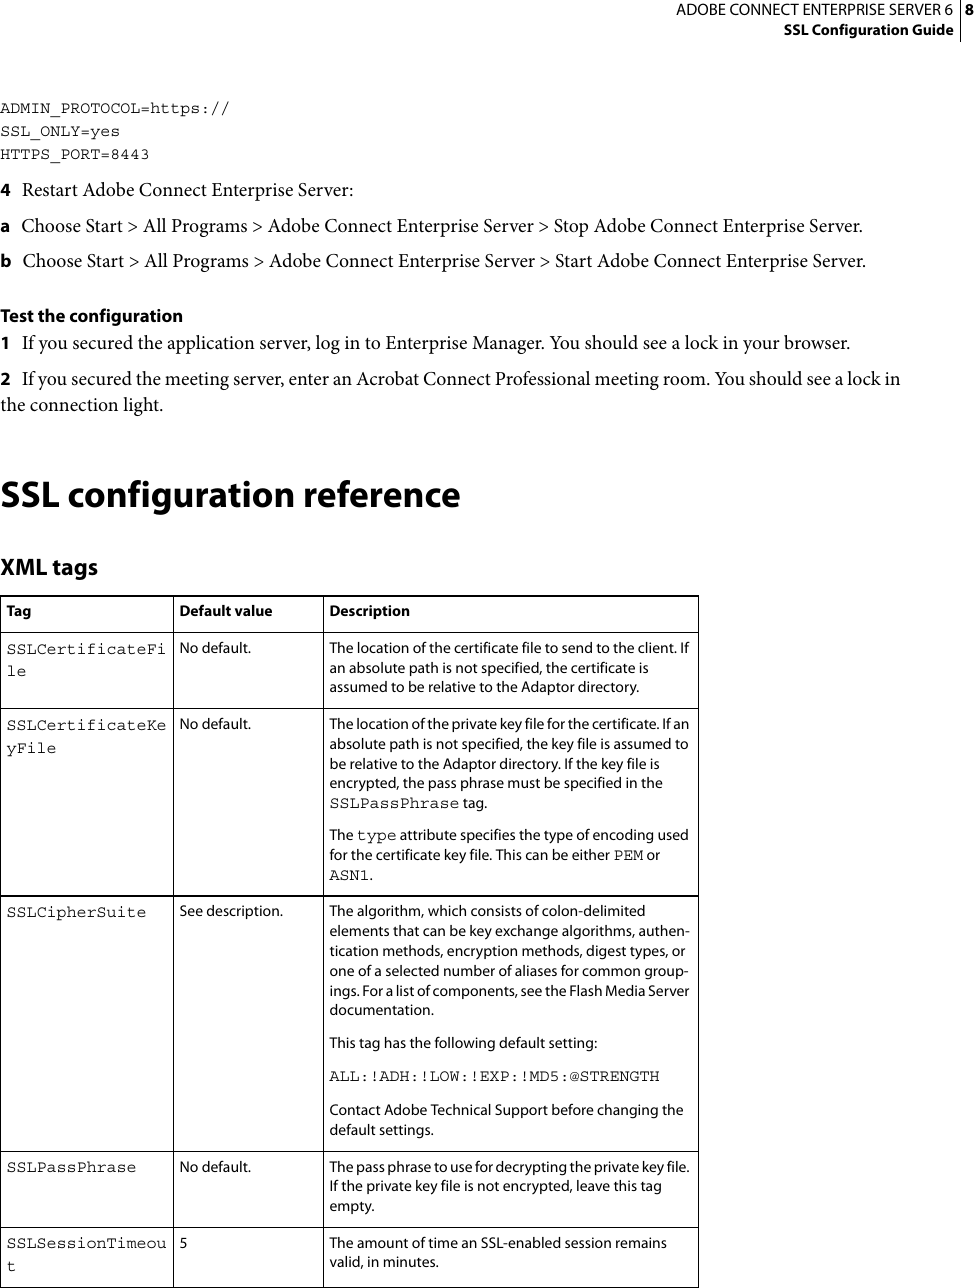 Page 11 of 12 - Adobe Connect Enterprise Server 6 SSL Configuration Guide Entreprise - 6.0 En